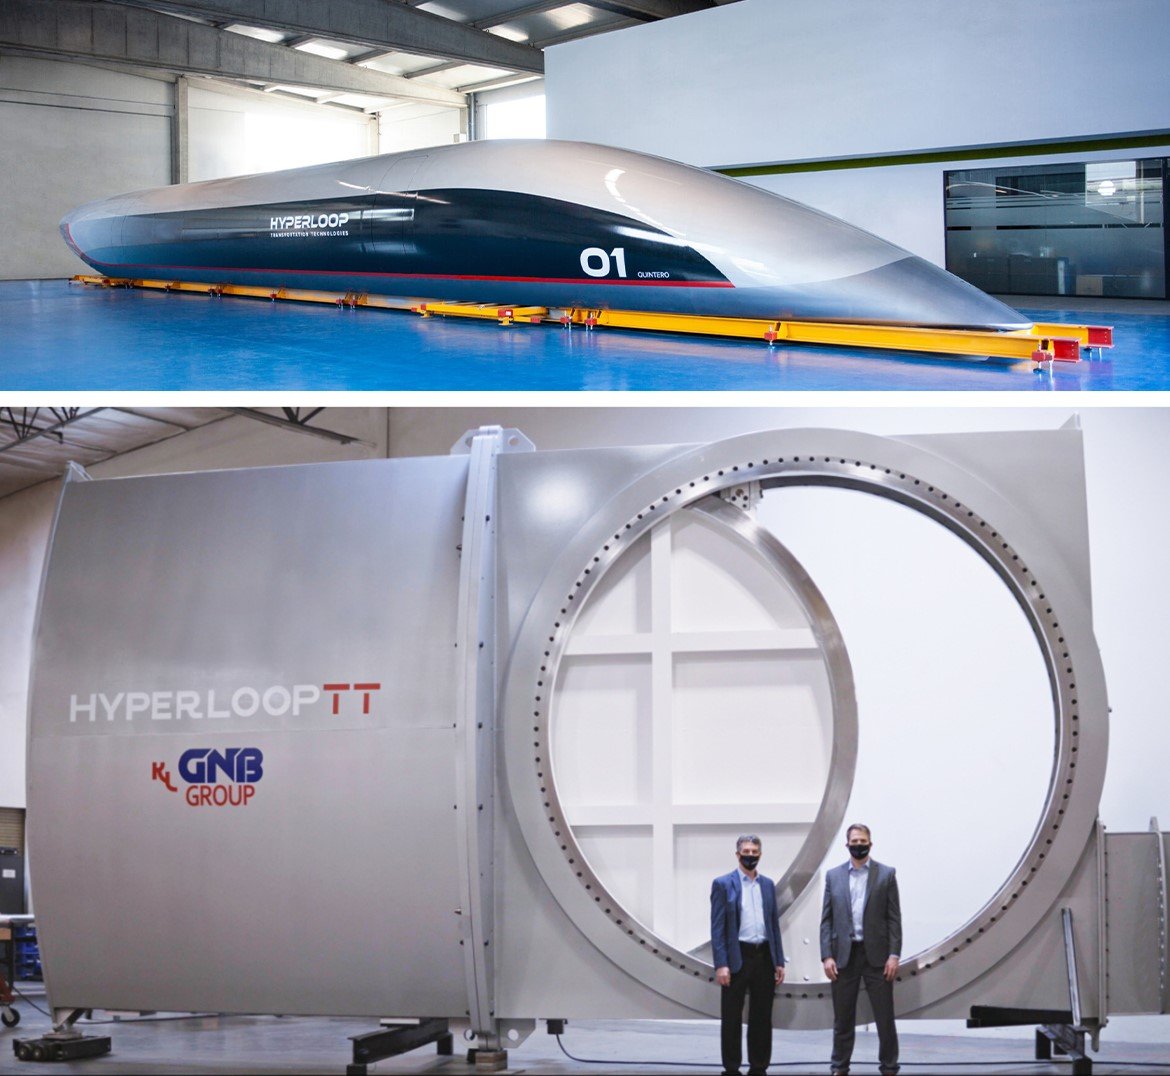 hyperloop tt capsule 